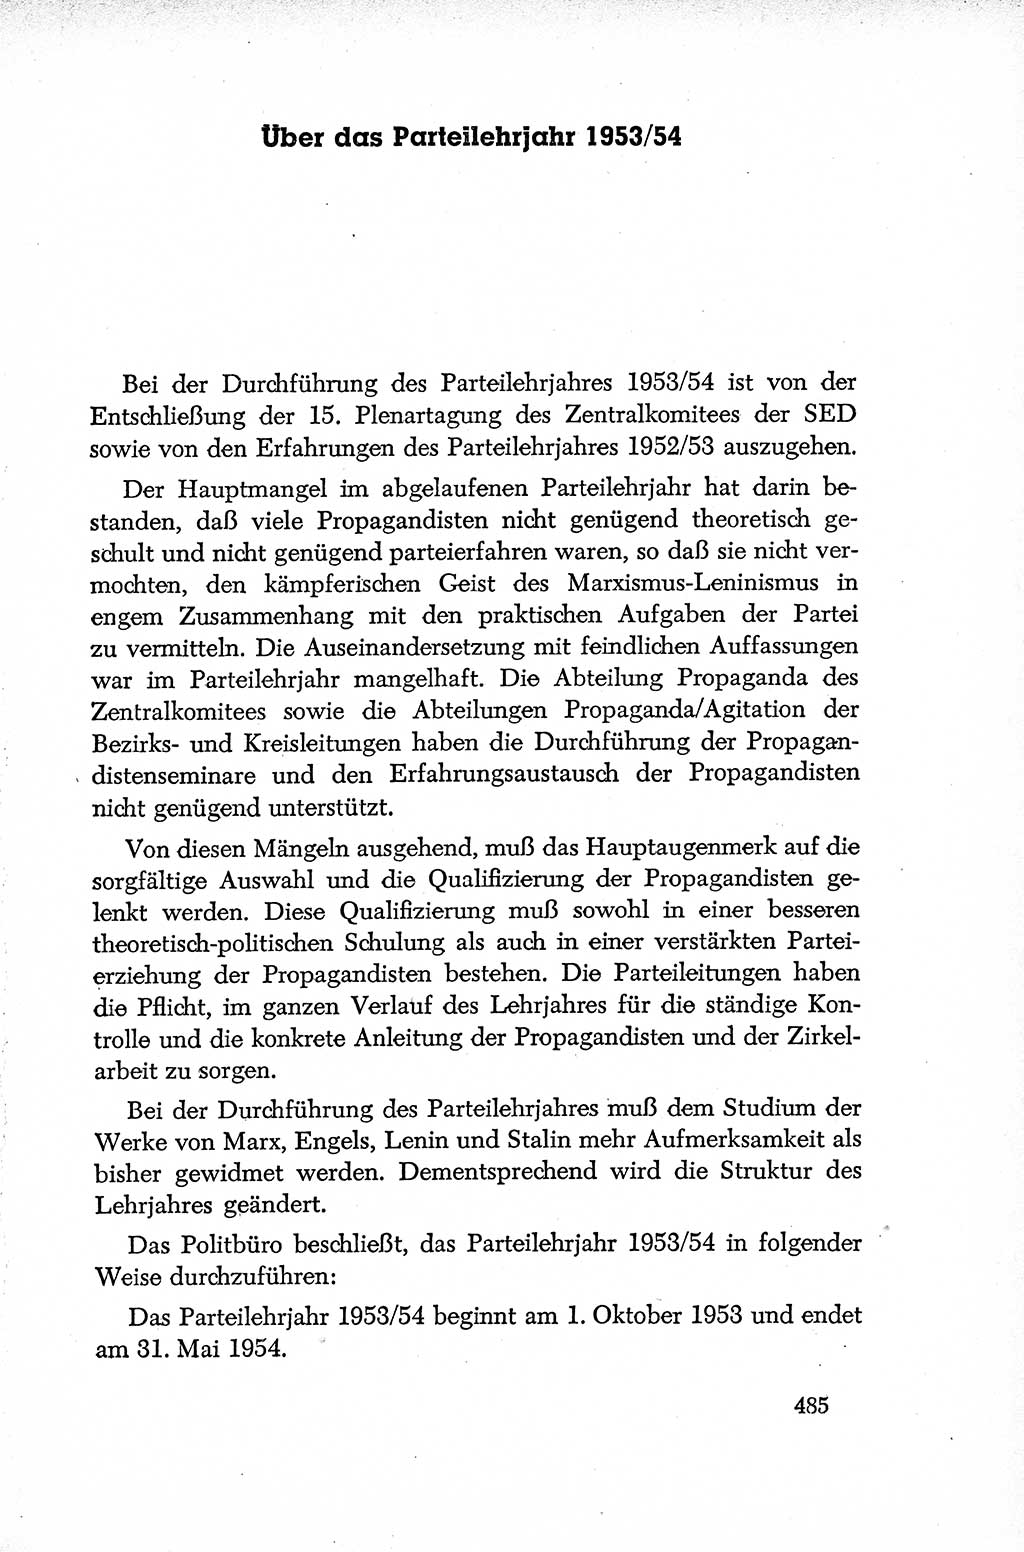 Dokumente der Sozialistischen Einheitspartei Deutschlands (SED) [Deutsche Demokratische Republik (DDR)] 1952-1953, Seite 485 (Dok. SED DDR 1952-1953, S. 485)